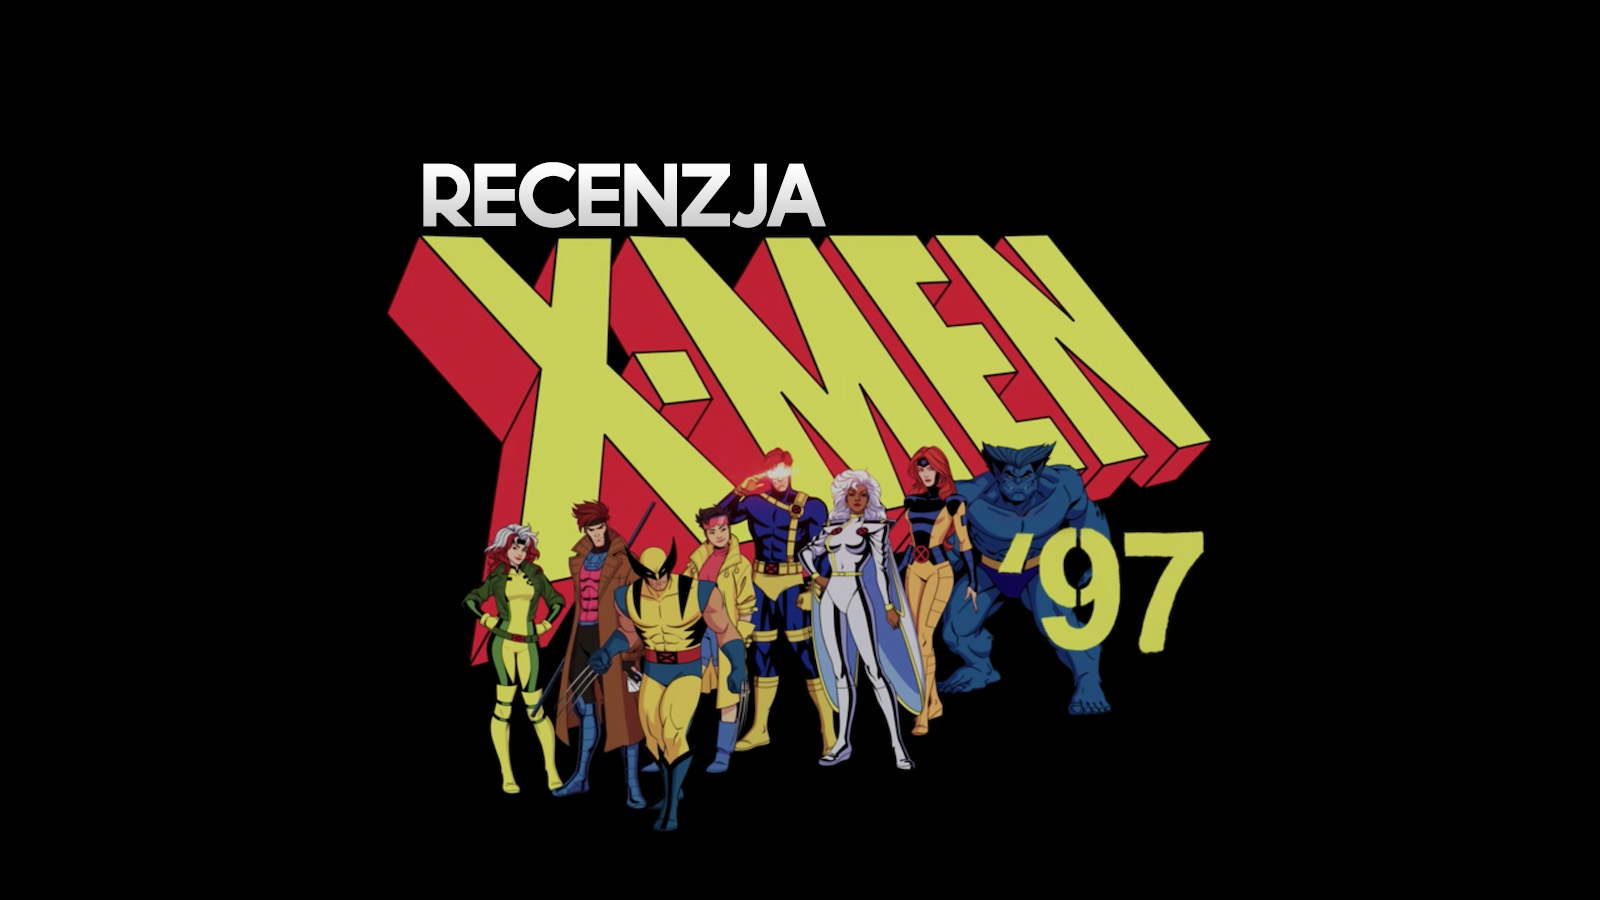 Recenzujemy serial “X-Men 97”! Czy to udany powrót kultowej animacji w 4K HDR?